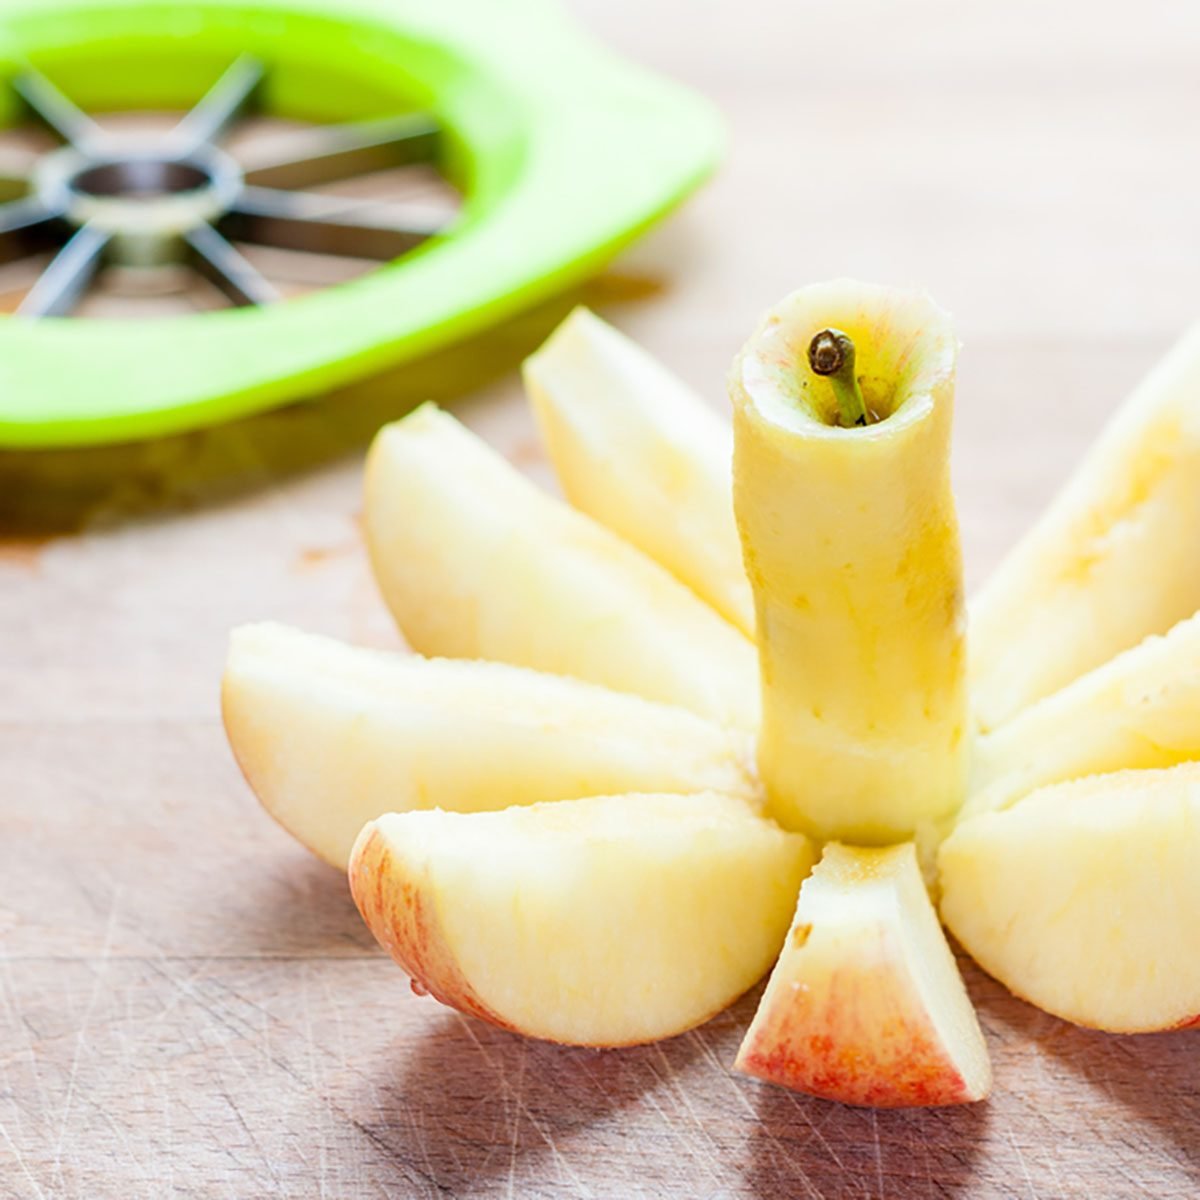 Lemon/Lime Slicer, Fruit Slicer Apple Separator Orange Cutter Enjoy Slices  to Garnish Food Drink Lemon